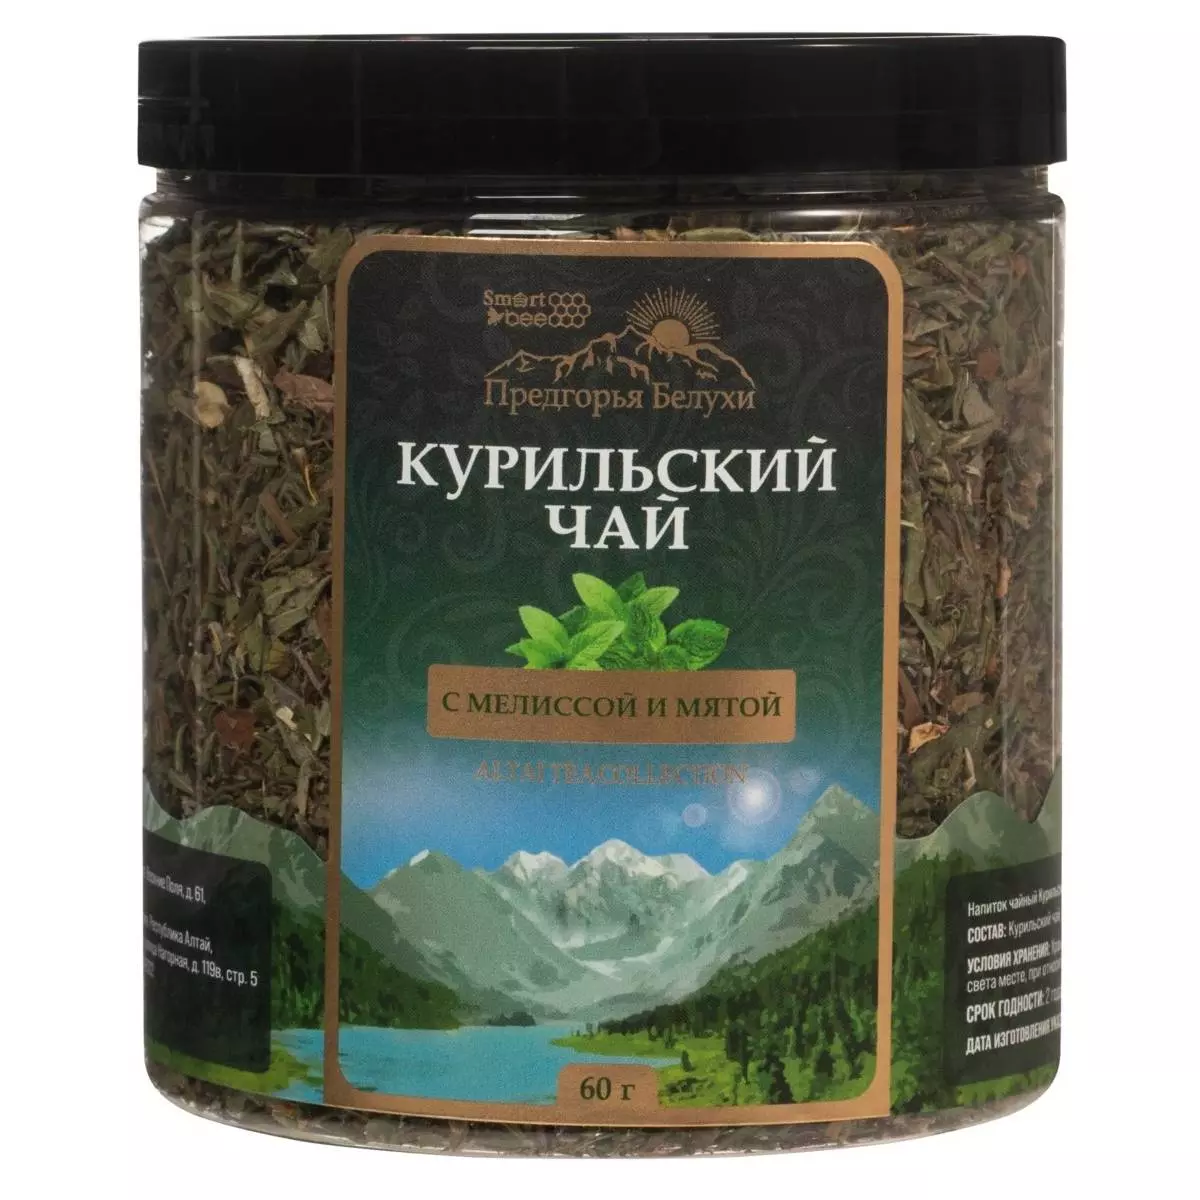 Купить Курильский черный чай с мелиссой и мятой, 60 г, Предгорья Белухи (Россия)